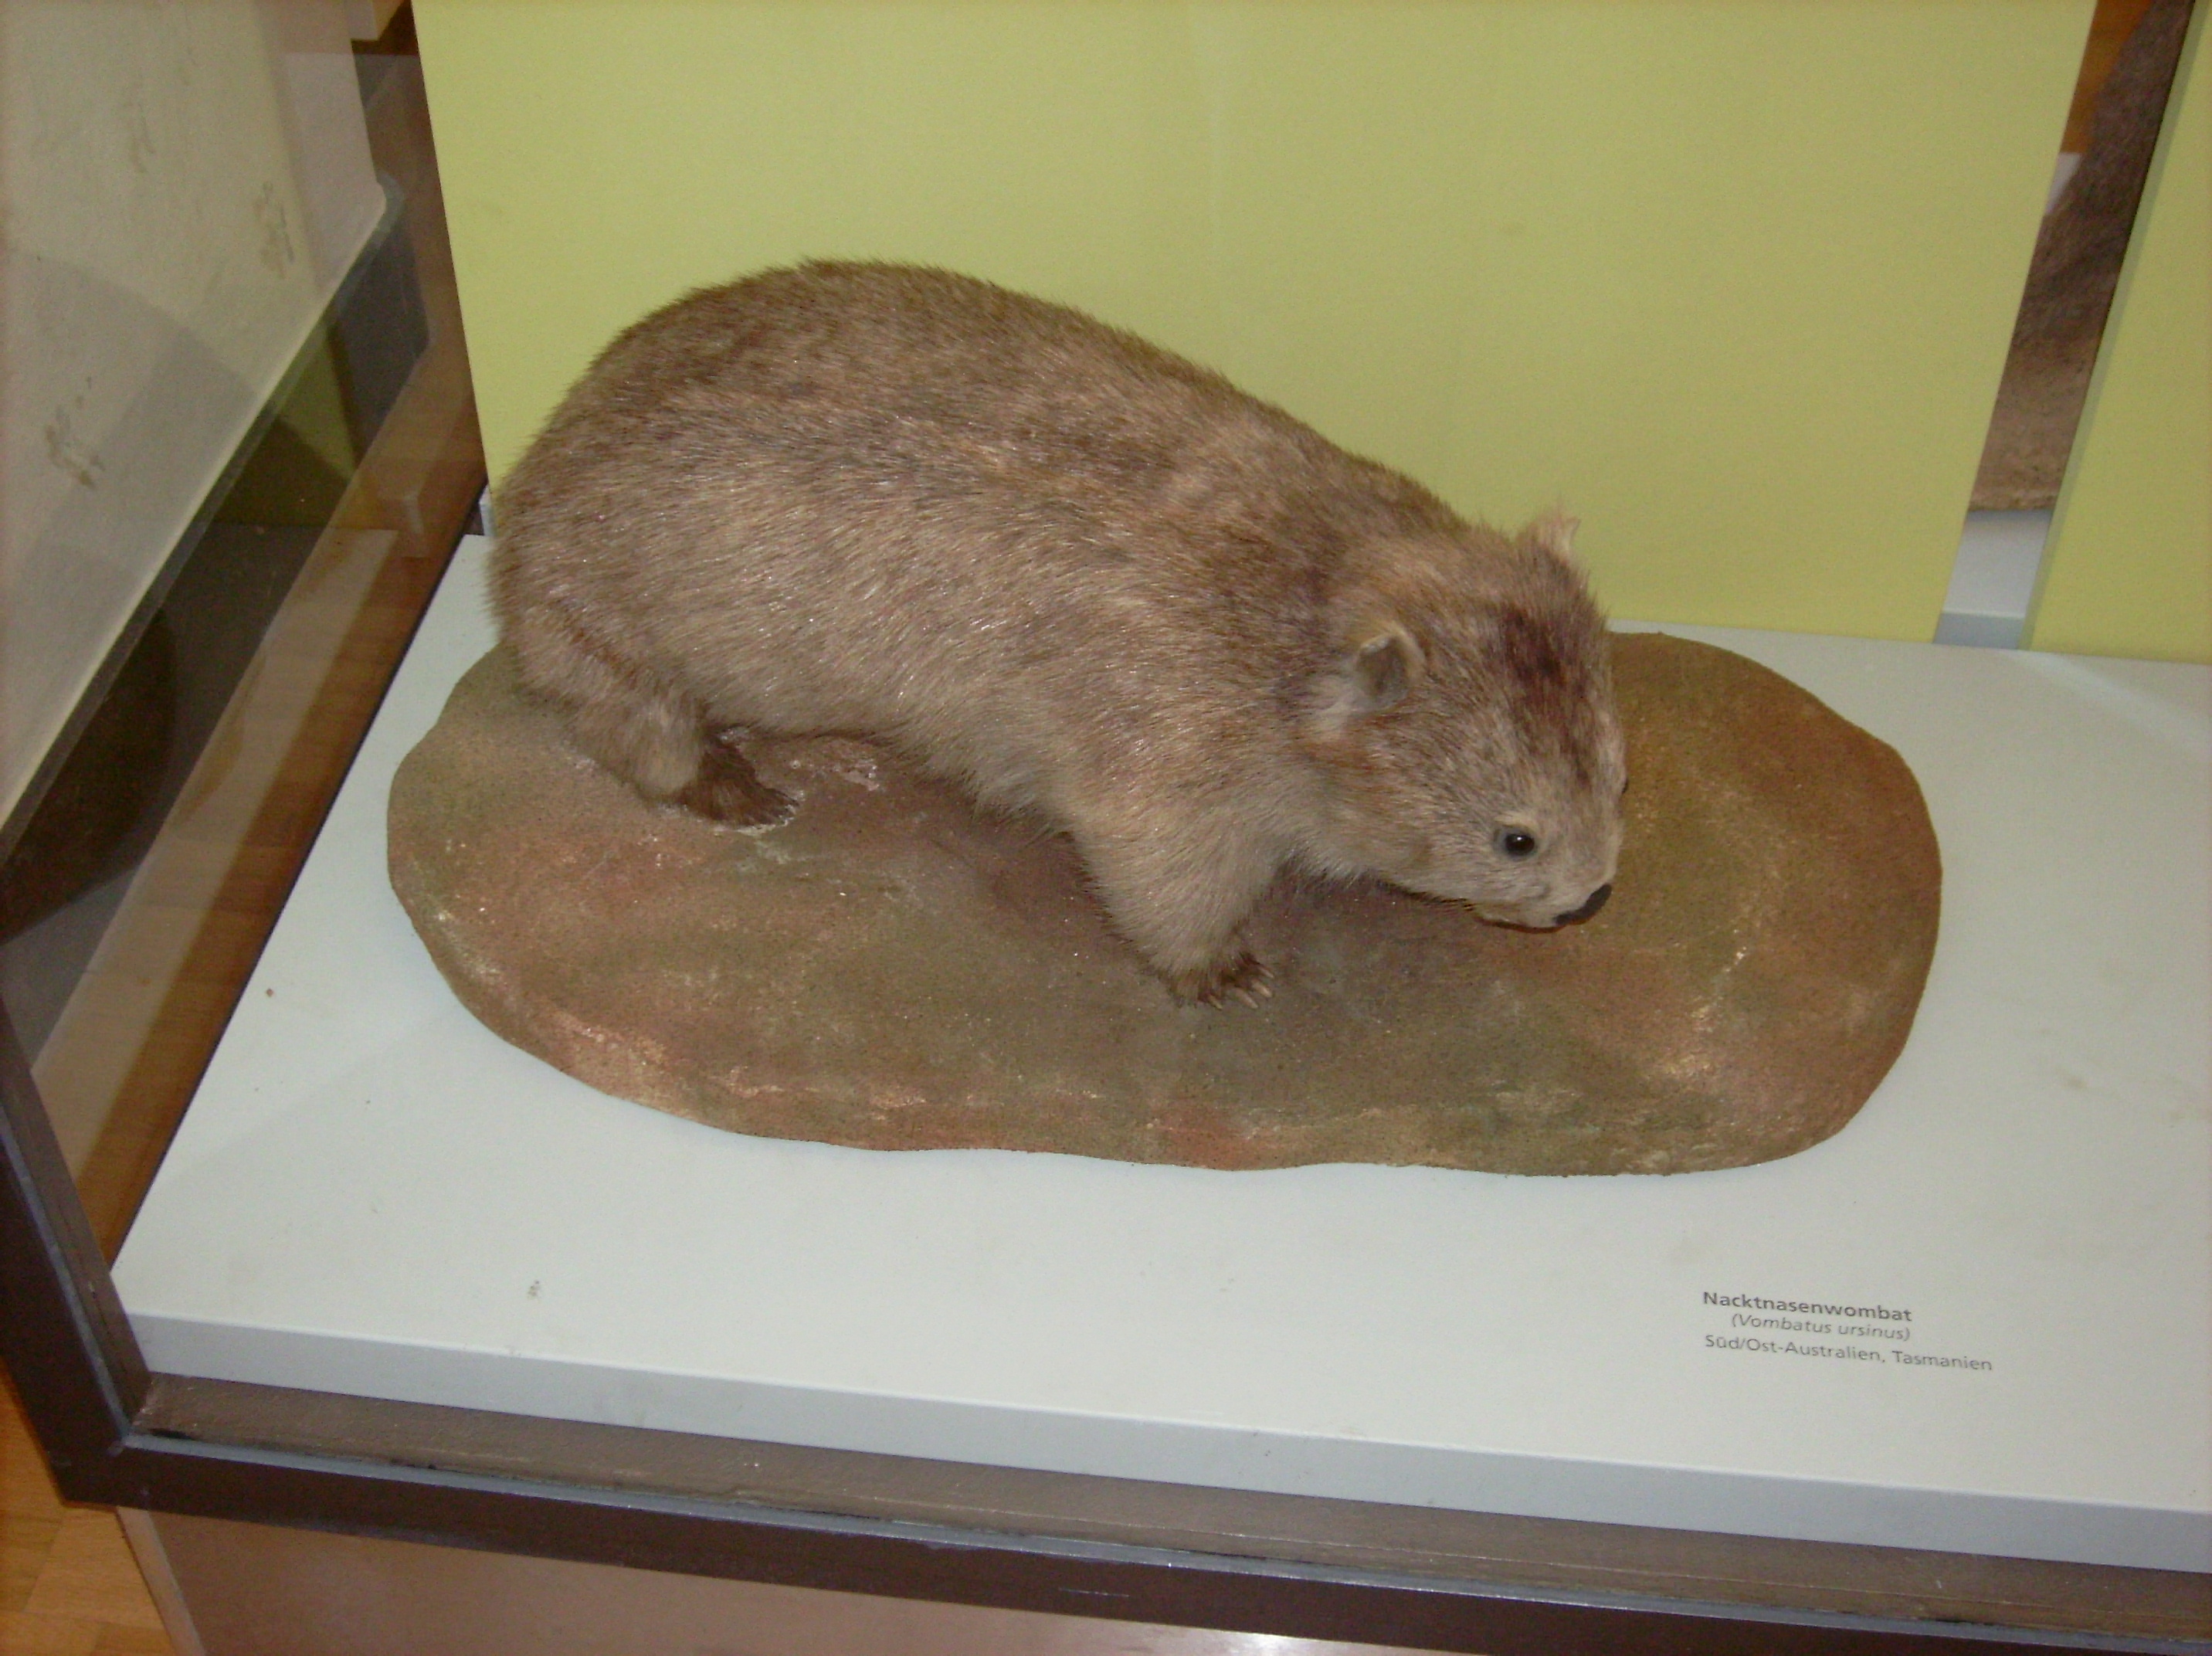 ein kleiner Australier: Nacktnasenwombat